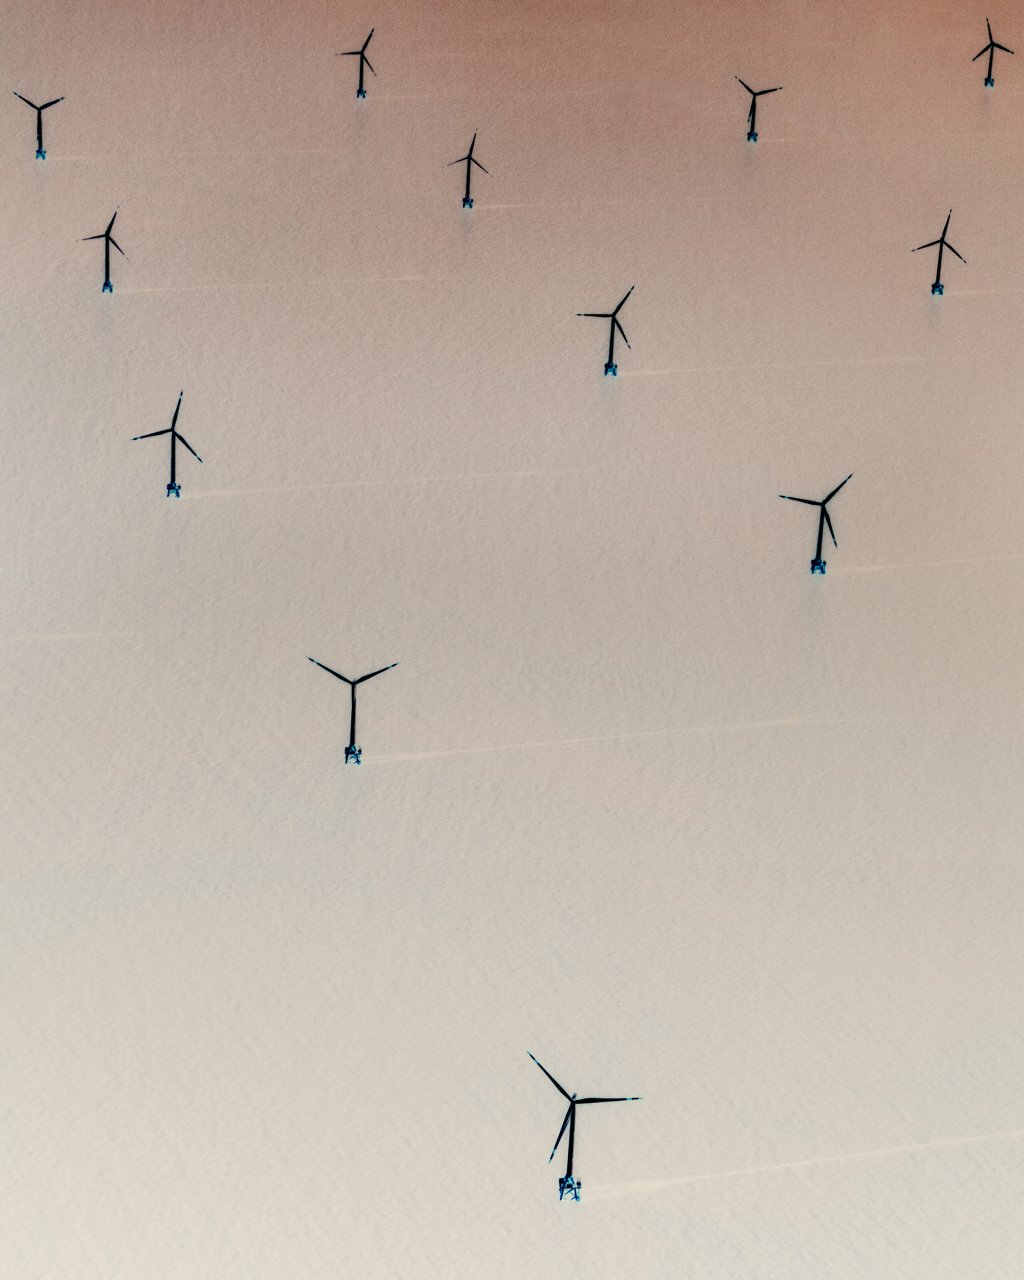 An offshore wind farm near Shanghai.